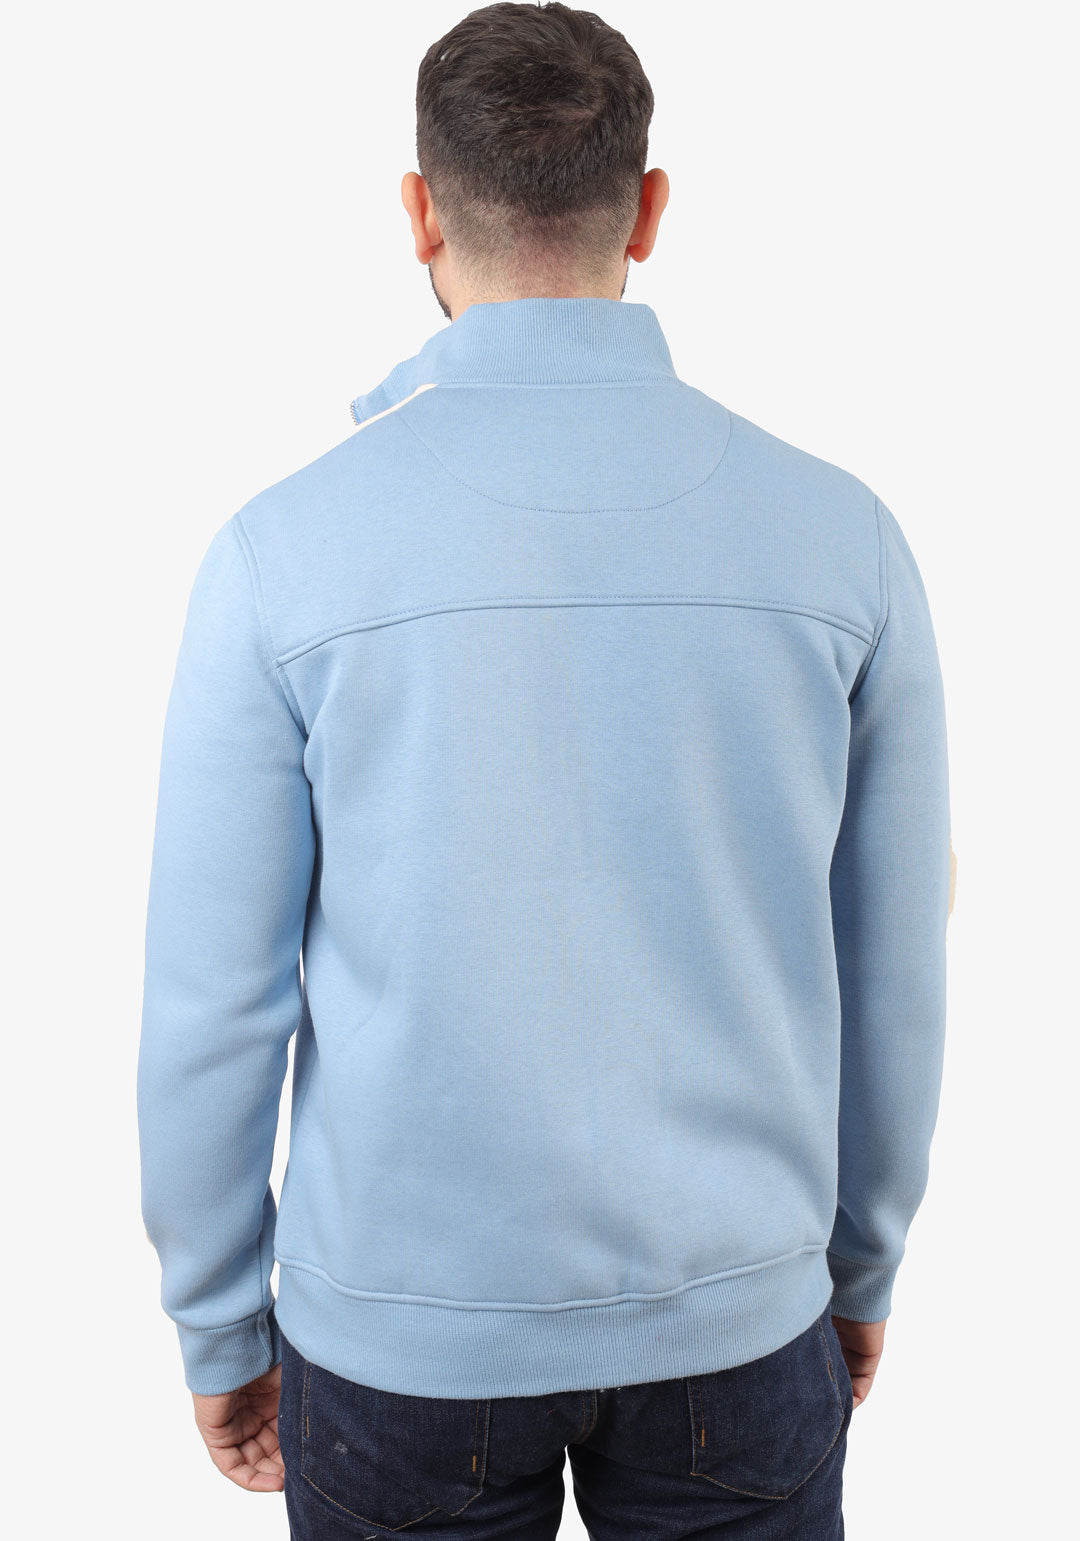 Baby-Blue Zipper Sweatshirt